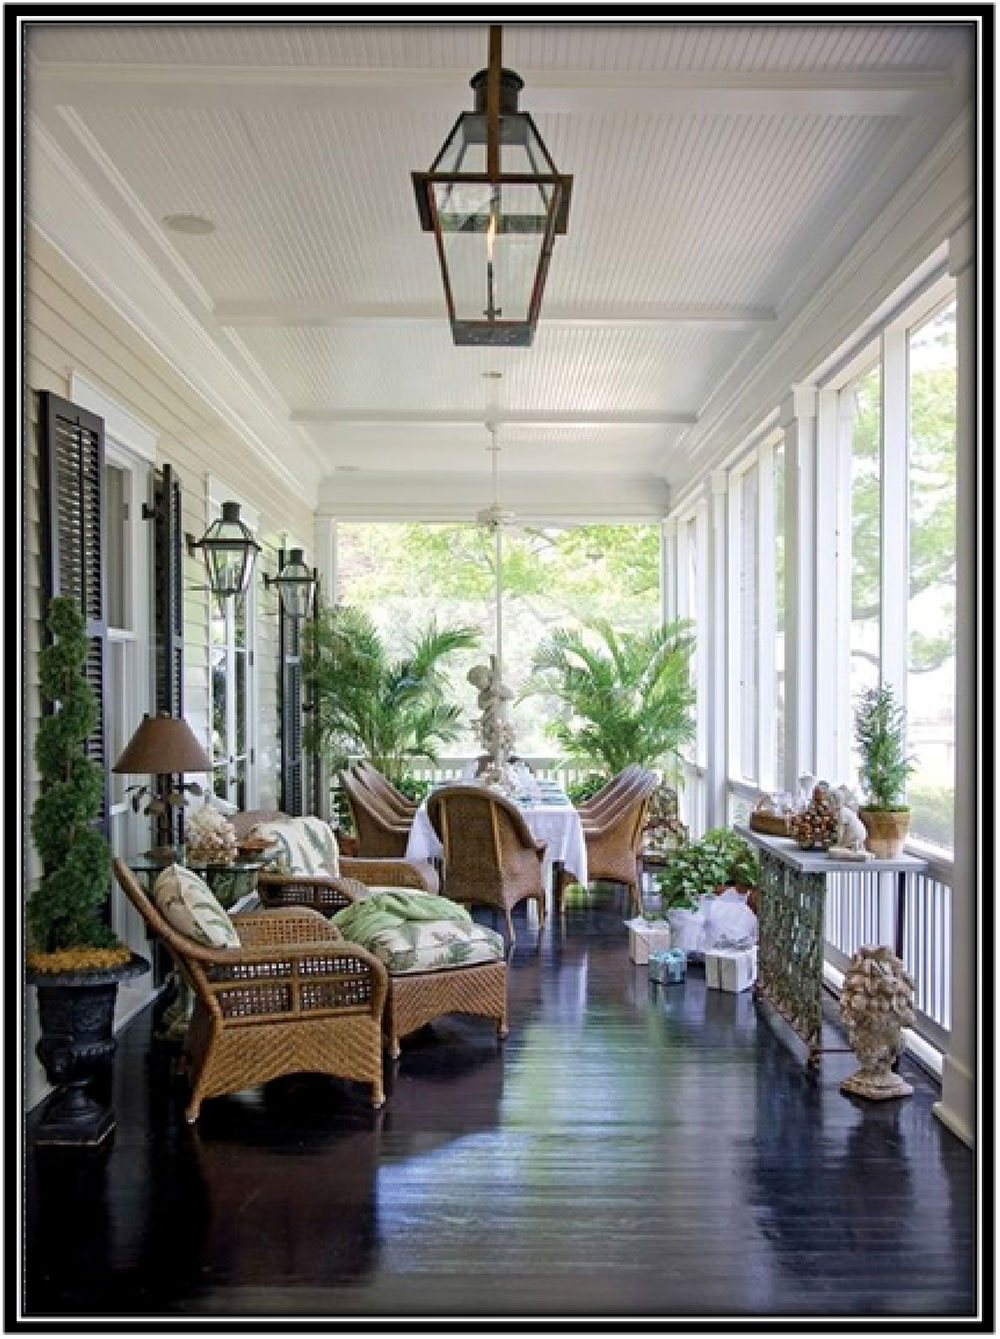 Home decor ideas for your porch arrangement